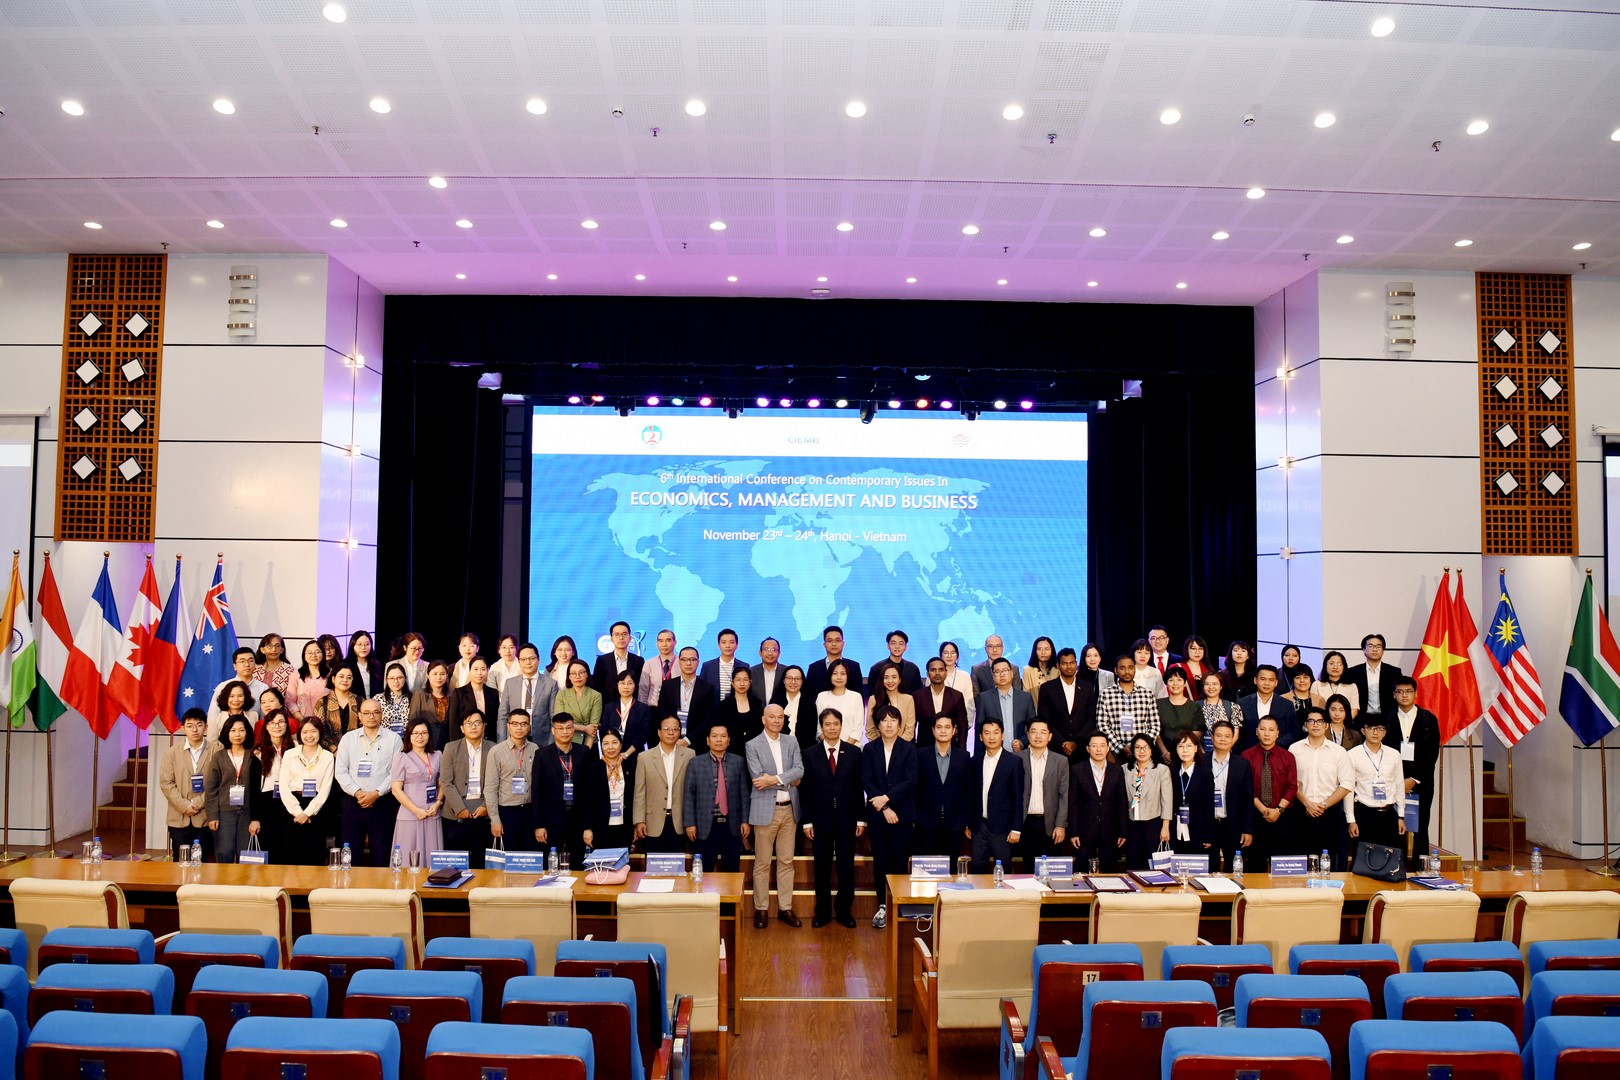 Trường Đại học Kinh tế Quốc dân tổ chức thành công Hội thảo quốc tế “Các vấn đề đương đại trong Kinh tế, Quản trị và Kinh doanh - 6th CIEMB 2023"